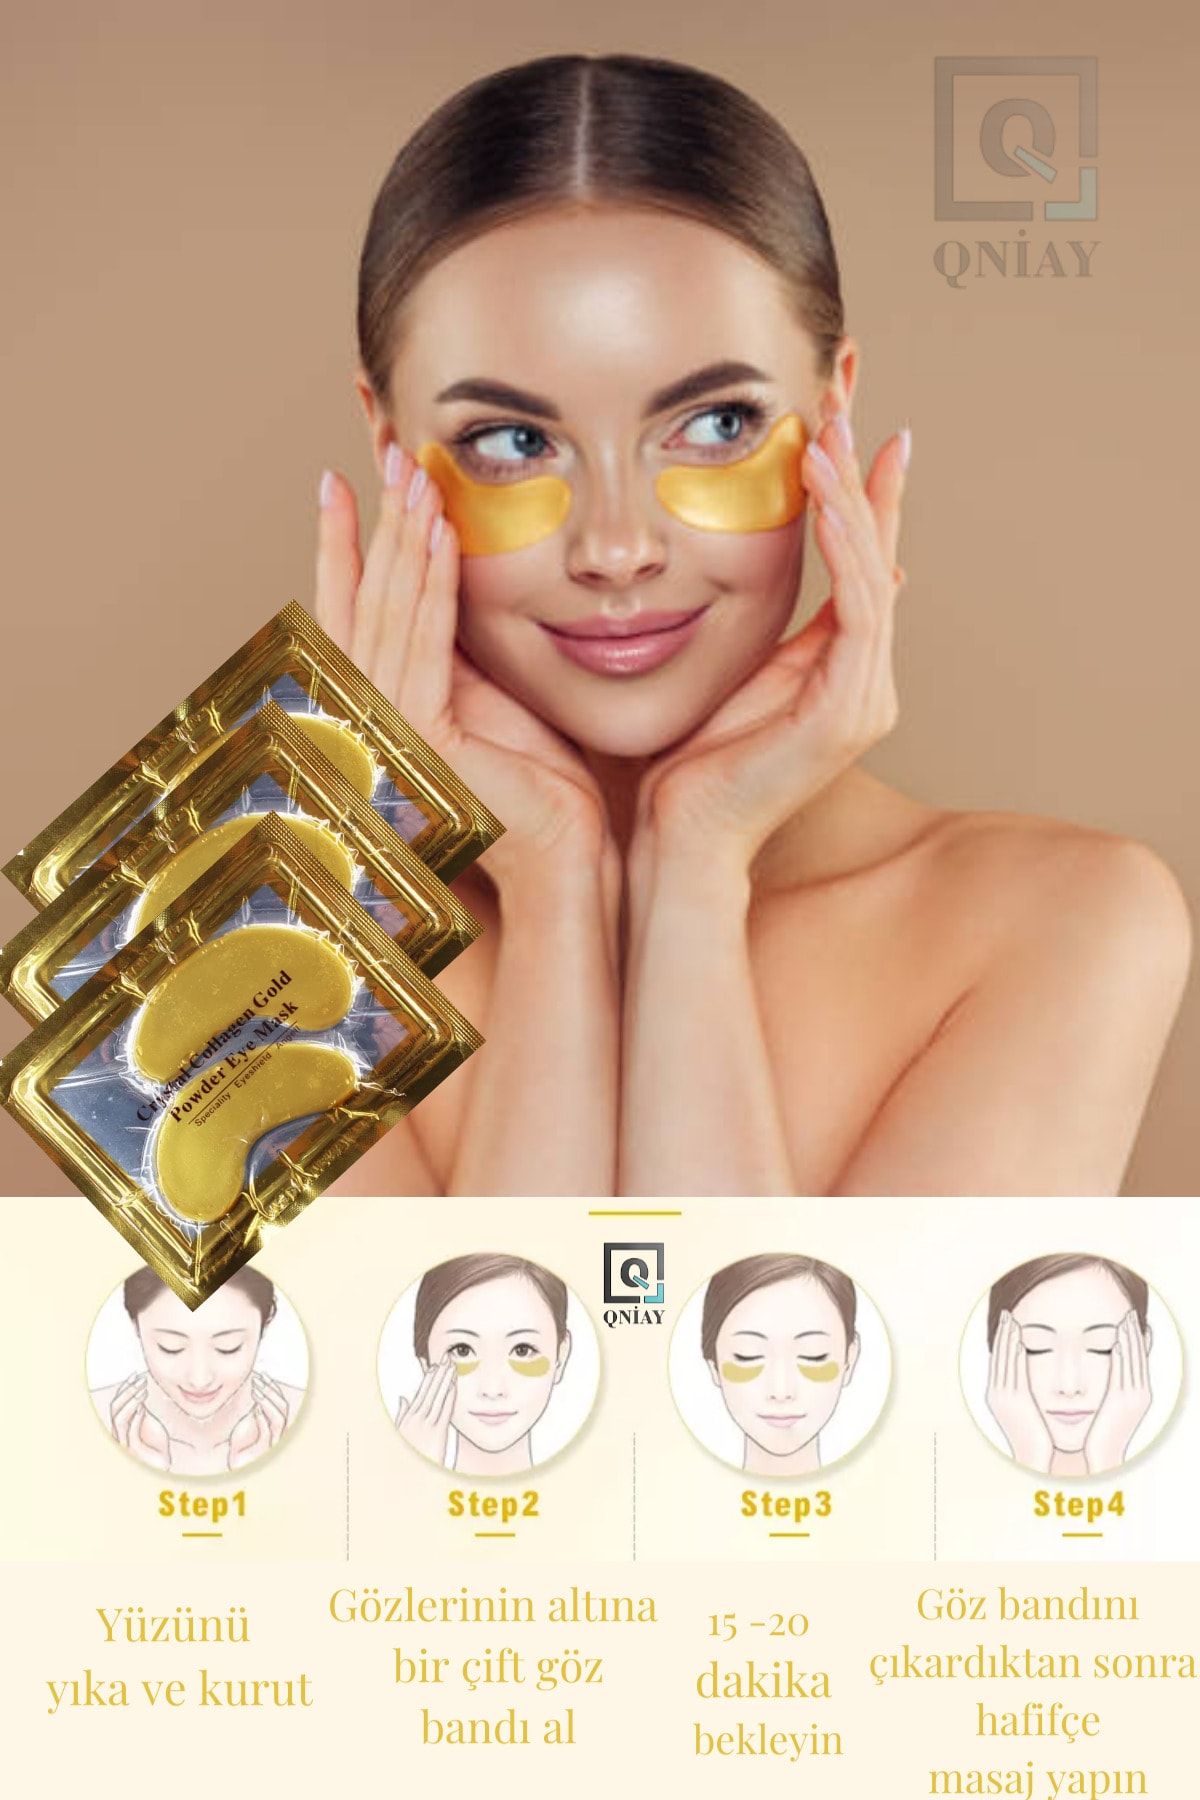 QNİAY Gözaltı Maskesi Kolajen 3 Paket - (2 Lİ ADET) Altın Göz Altı Maskesi Altın Yüz Cilt Bakımı